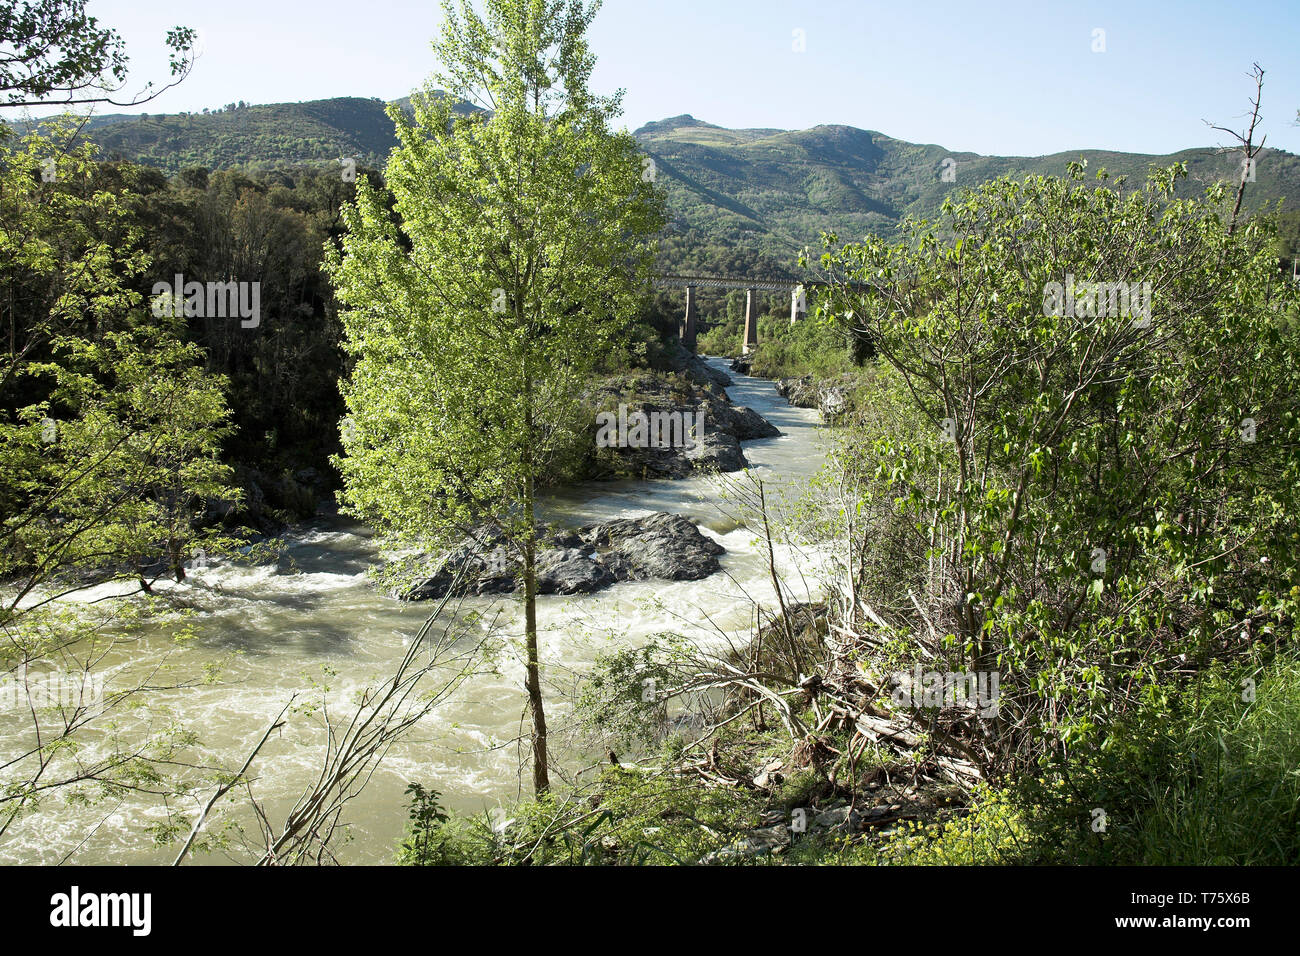 La rivière Golo de revenir à des niveaux normaux après une inondation Corse France Banque D'Images